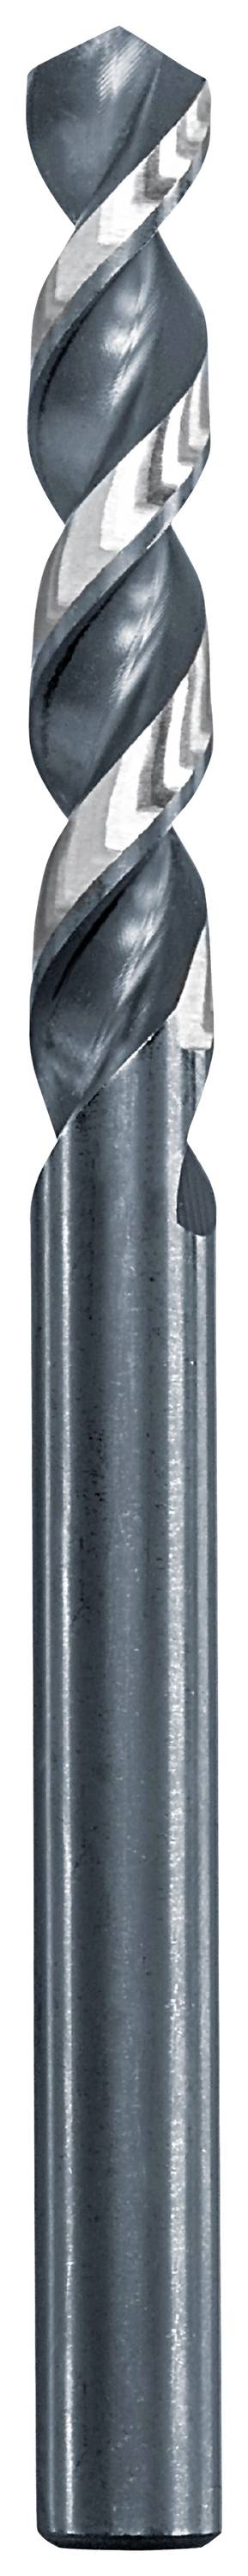 KWB 258645 Metall-Spiralbohrer 4.5 mm Gesamtlänge 80 mm 1 St.